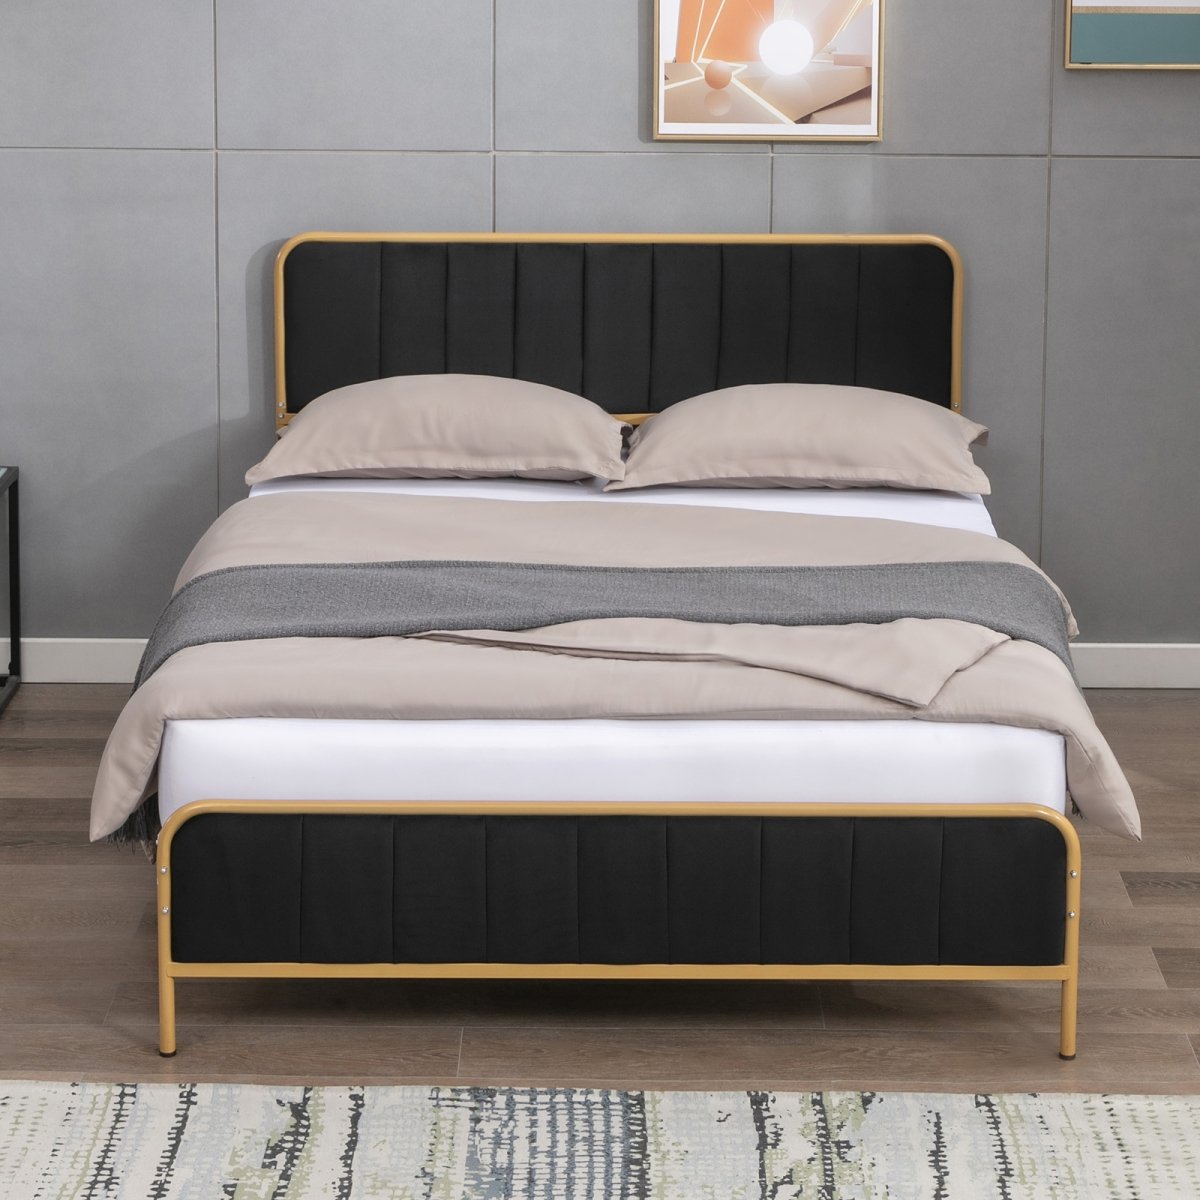 Bed Frame | Velvet Upholstered Metal Platform Bed with Tufted Headboard and Gold Trim - Mjkonebed frame